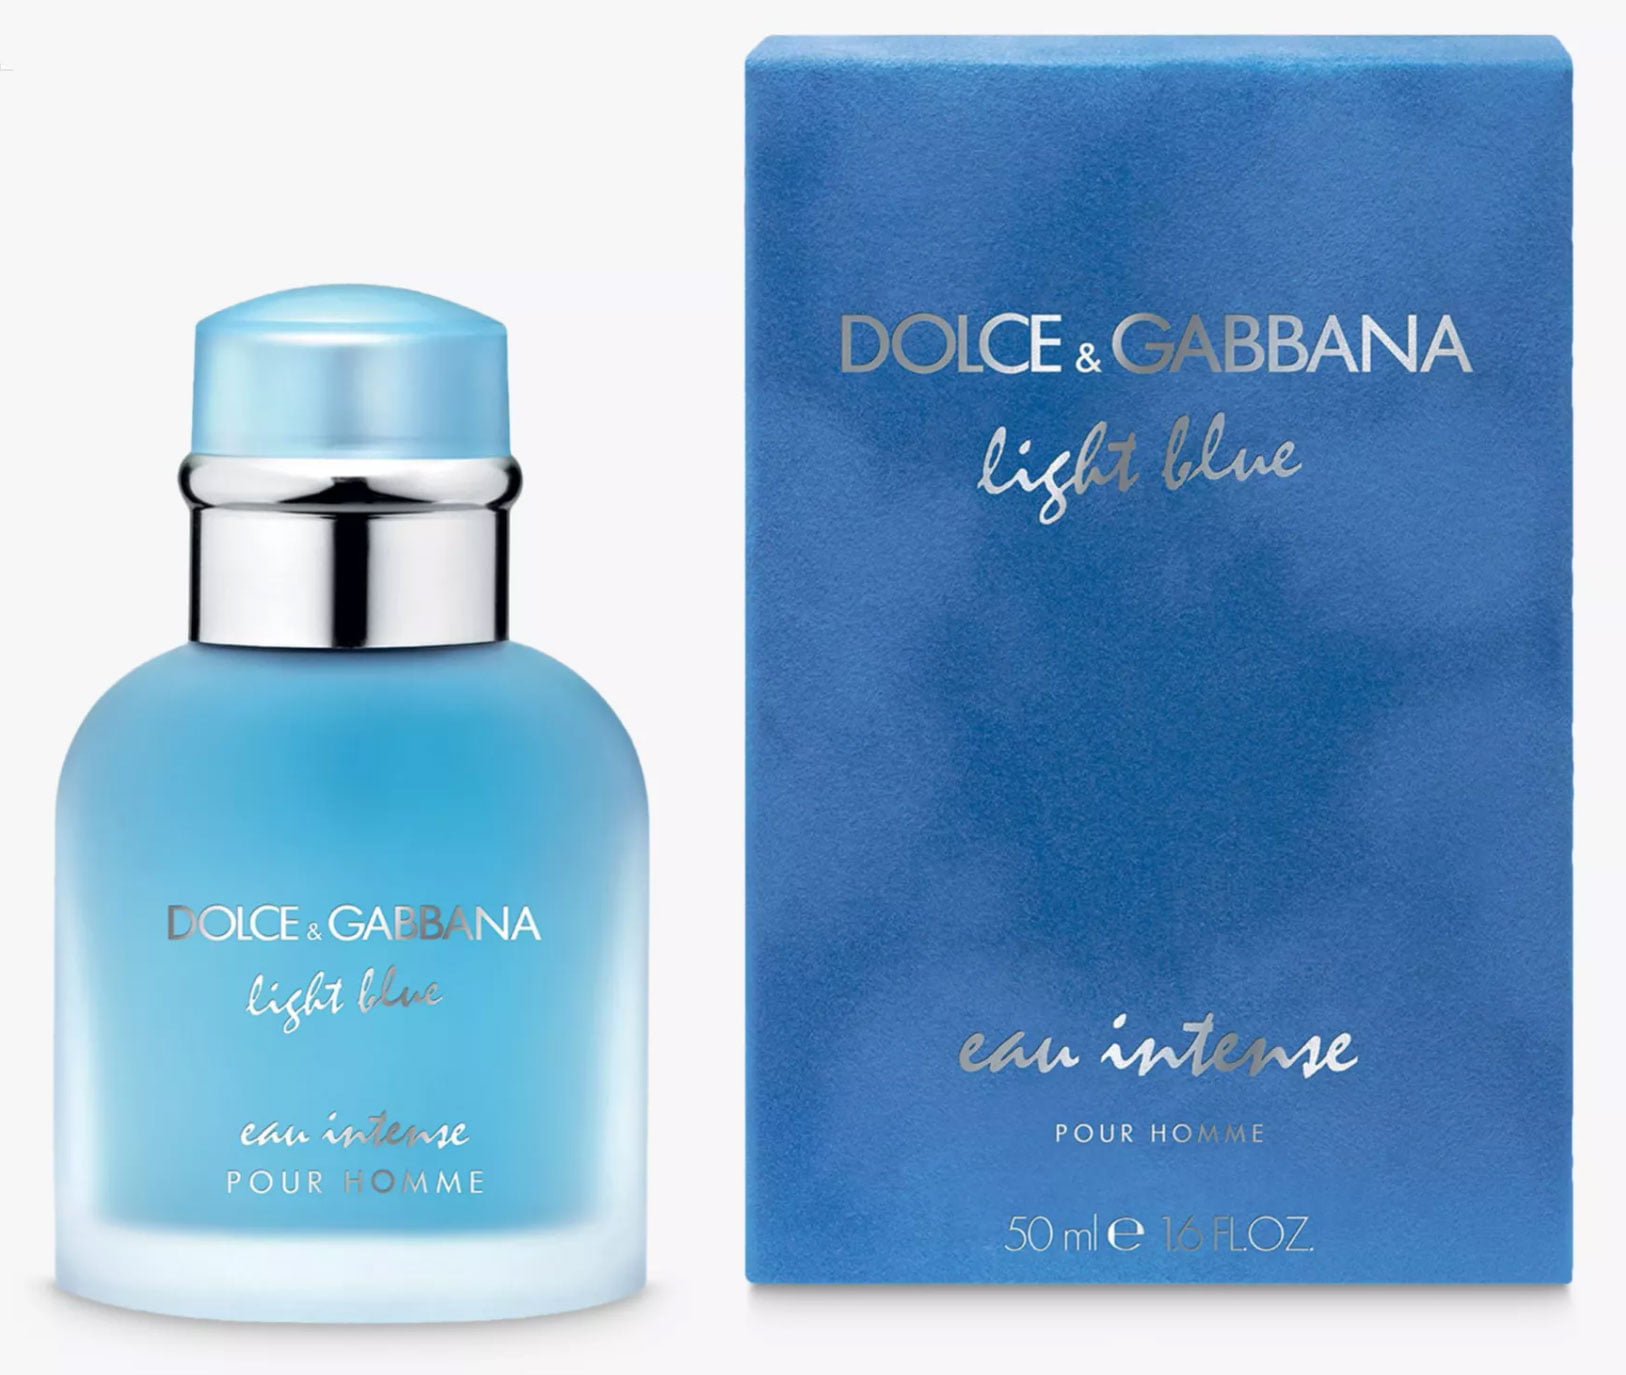 Dolce & Gabbana Light Blue Eau Intense Pour Homme EDP - 100ml For Men ...